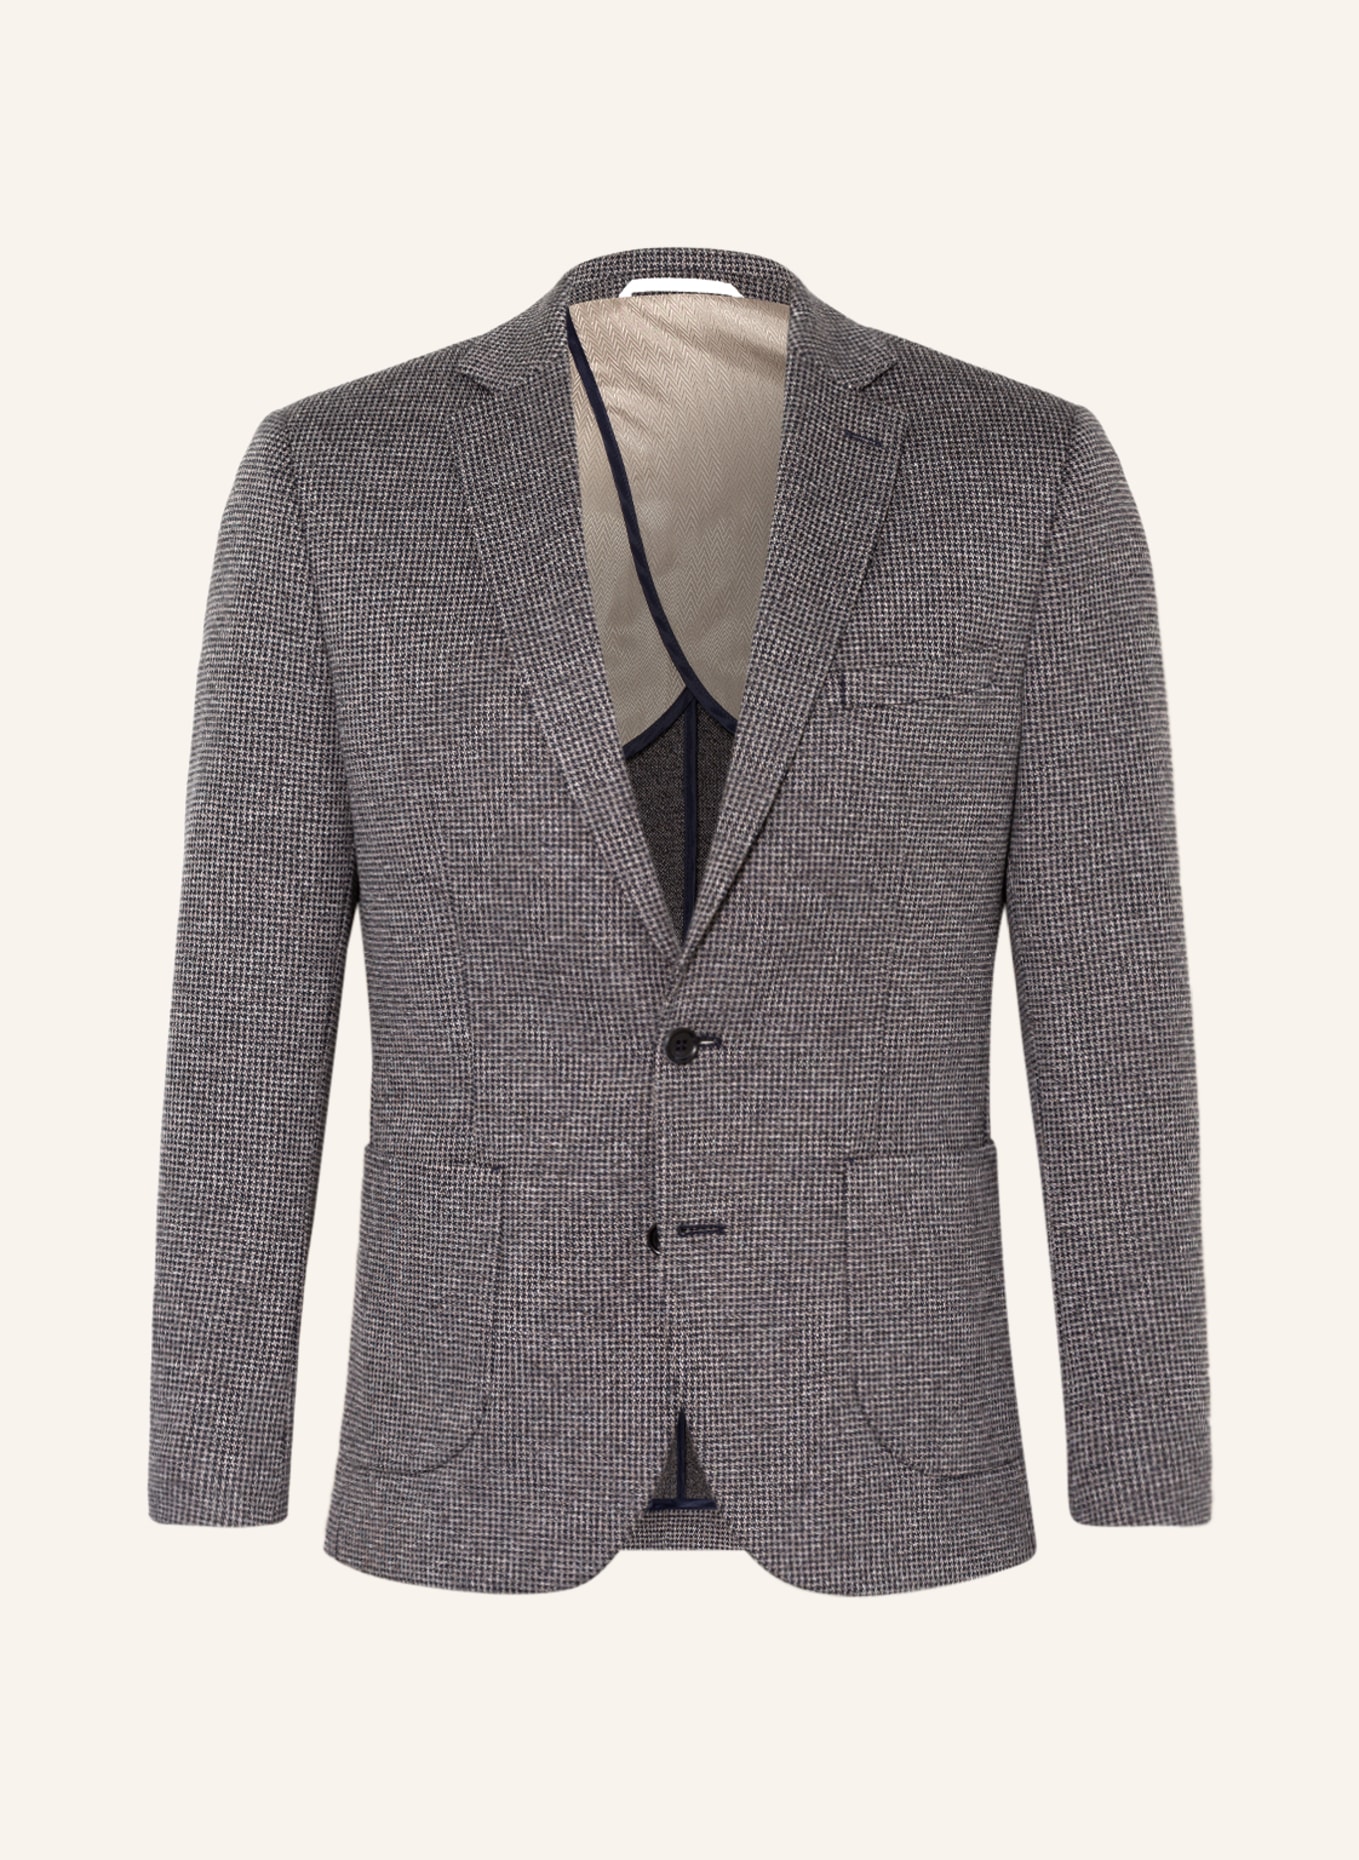 PAUL Suit jacket Slim Fit, Color: 920 Greige (Image 1)